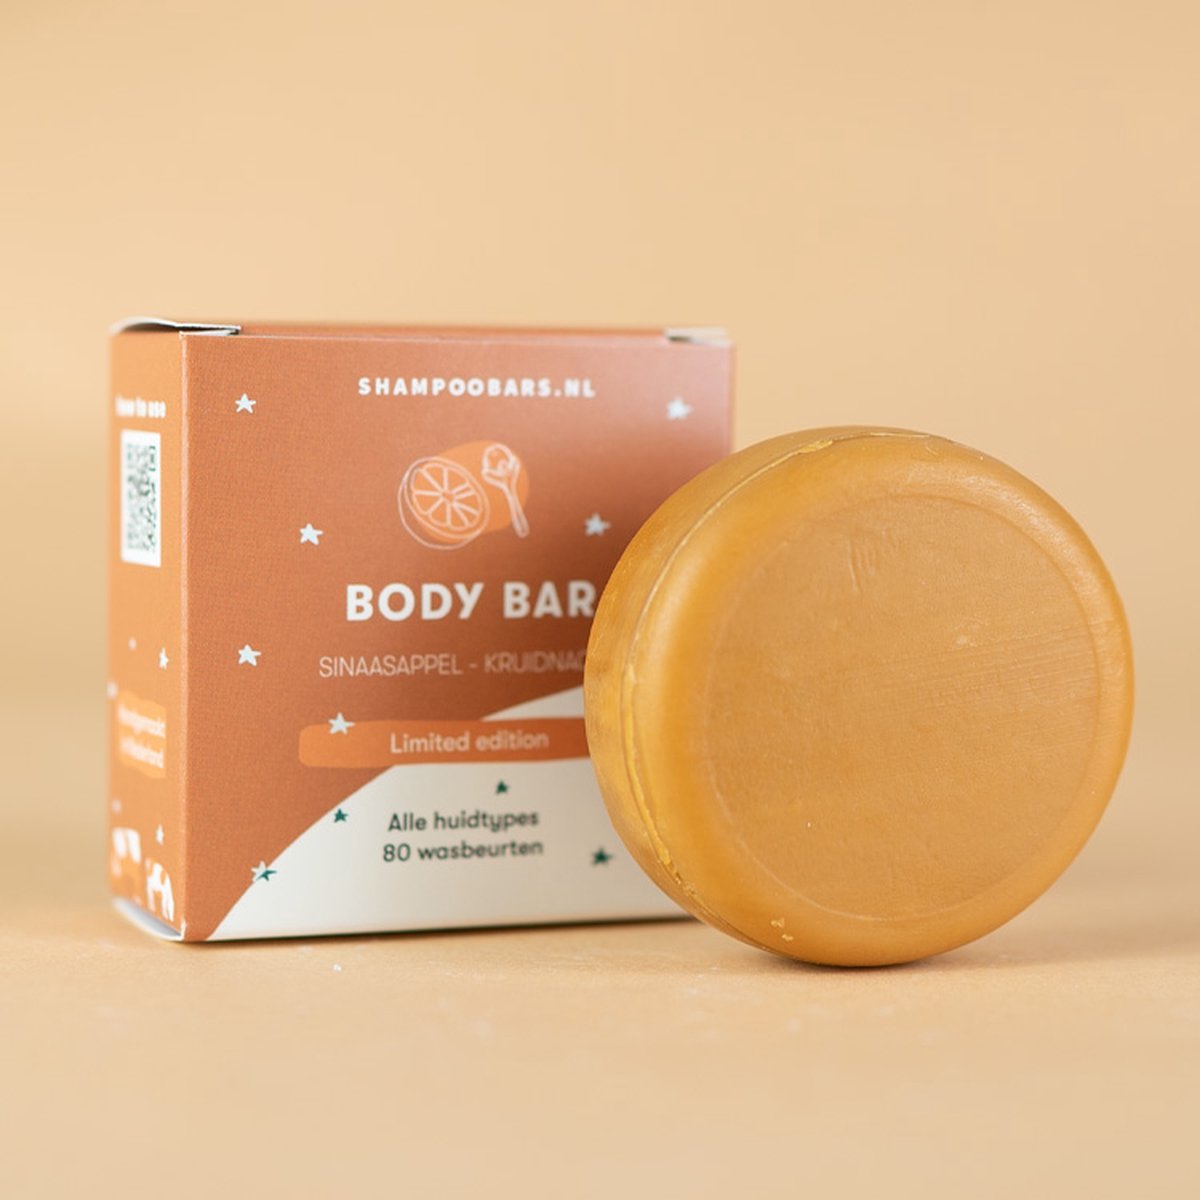 Body Bar Sinaasappel - Kruidnagel | Handgemaakt in Nederland | 80 wasbeurten | Plasticvrij | Dierproefvrij | Vegan | Crueltyfree | 100% biologisch afbreekbare verpakking